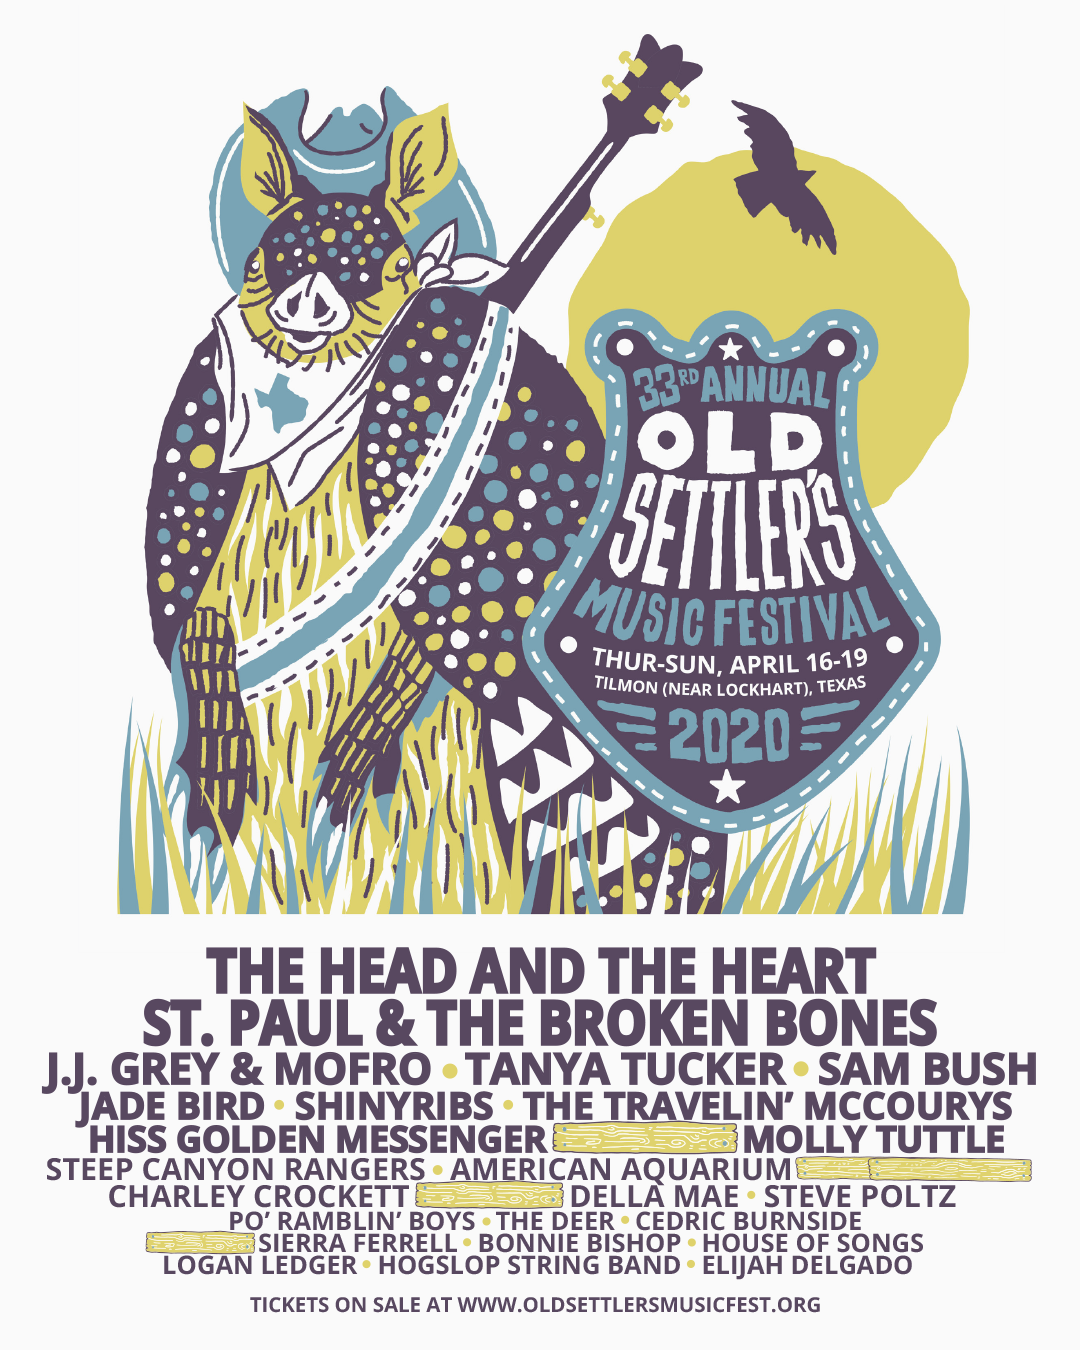 The Head and The Heart, St. Paul & The Broken Bones, Tanya Tucker to Headline the 2020 Old Settler's Music Festival